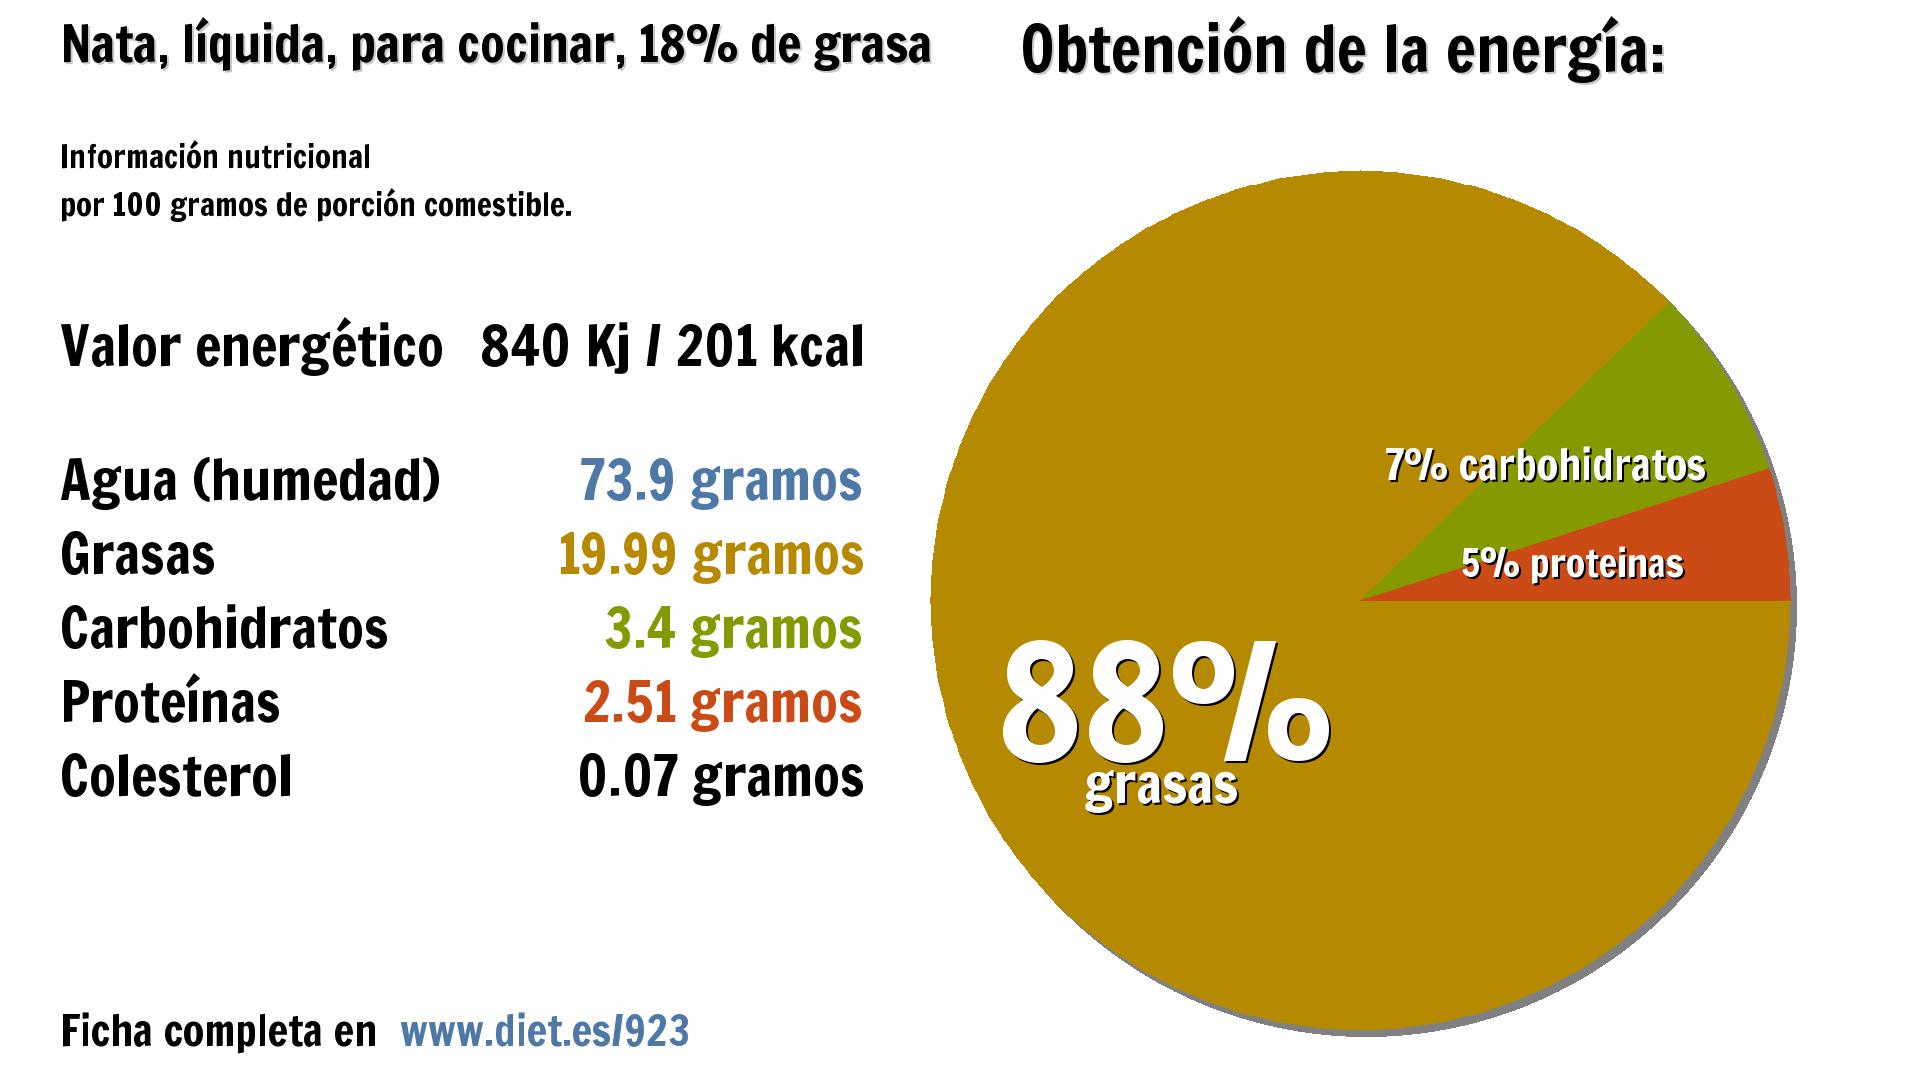 Nata, líquida, para cocinar, 18% de grasa: energía 840 Kj, agua 74 g., grasas 20 g., carbohidratos 3 g. y proteínas 3 g.